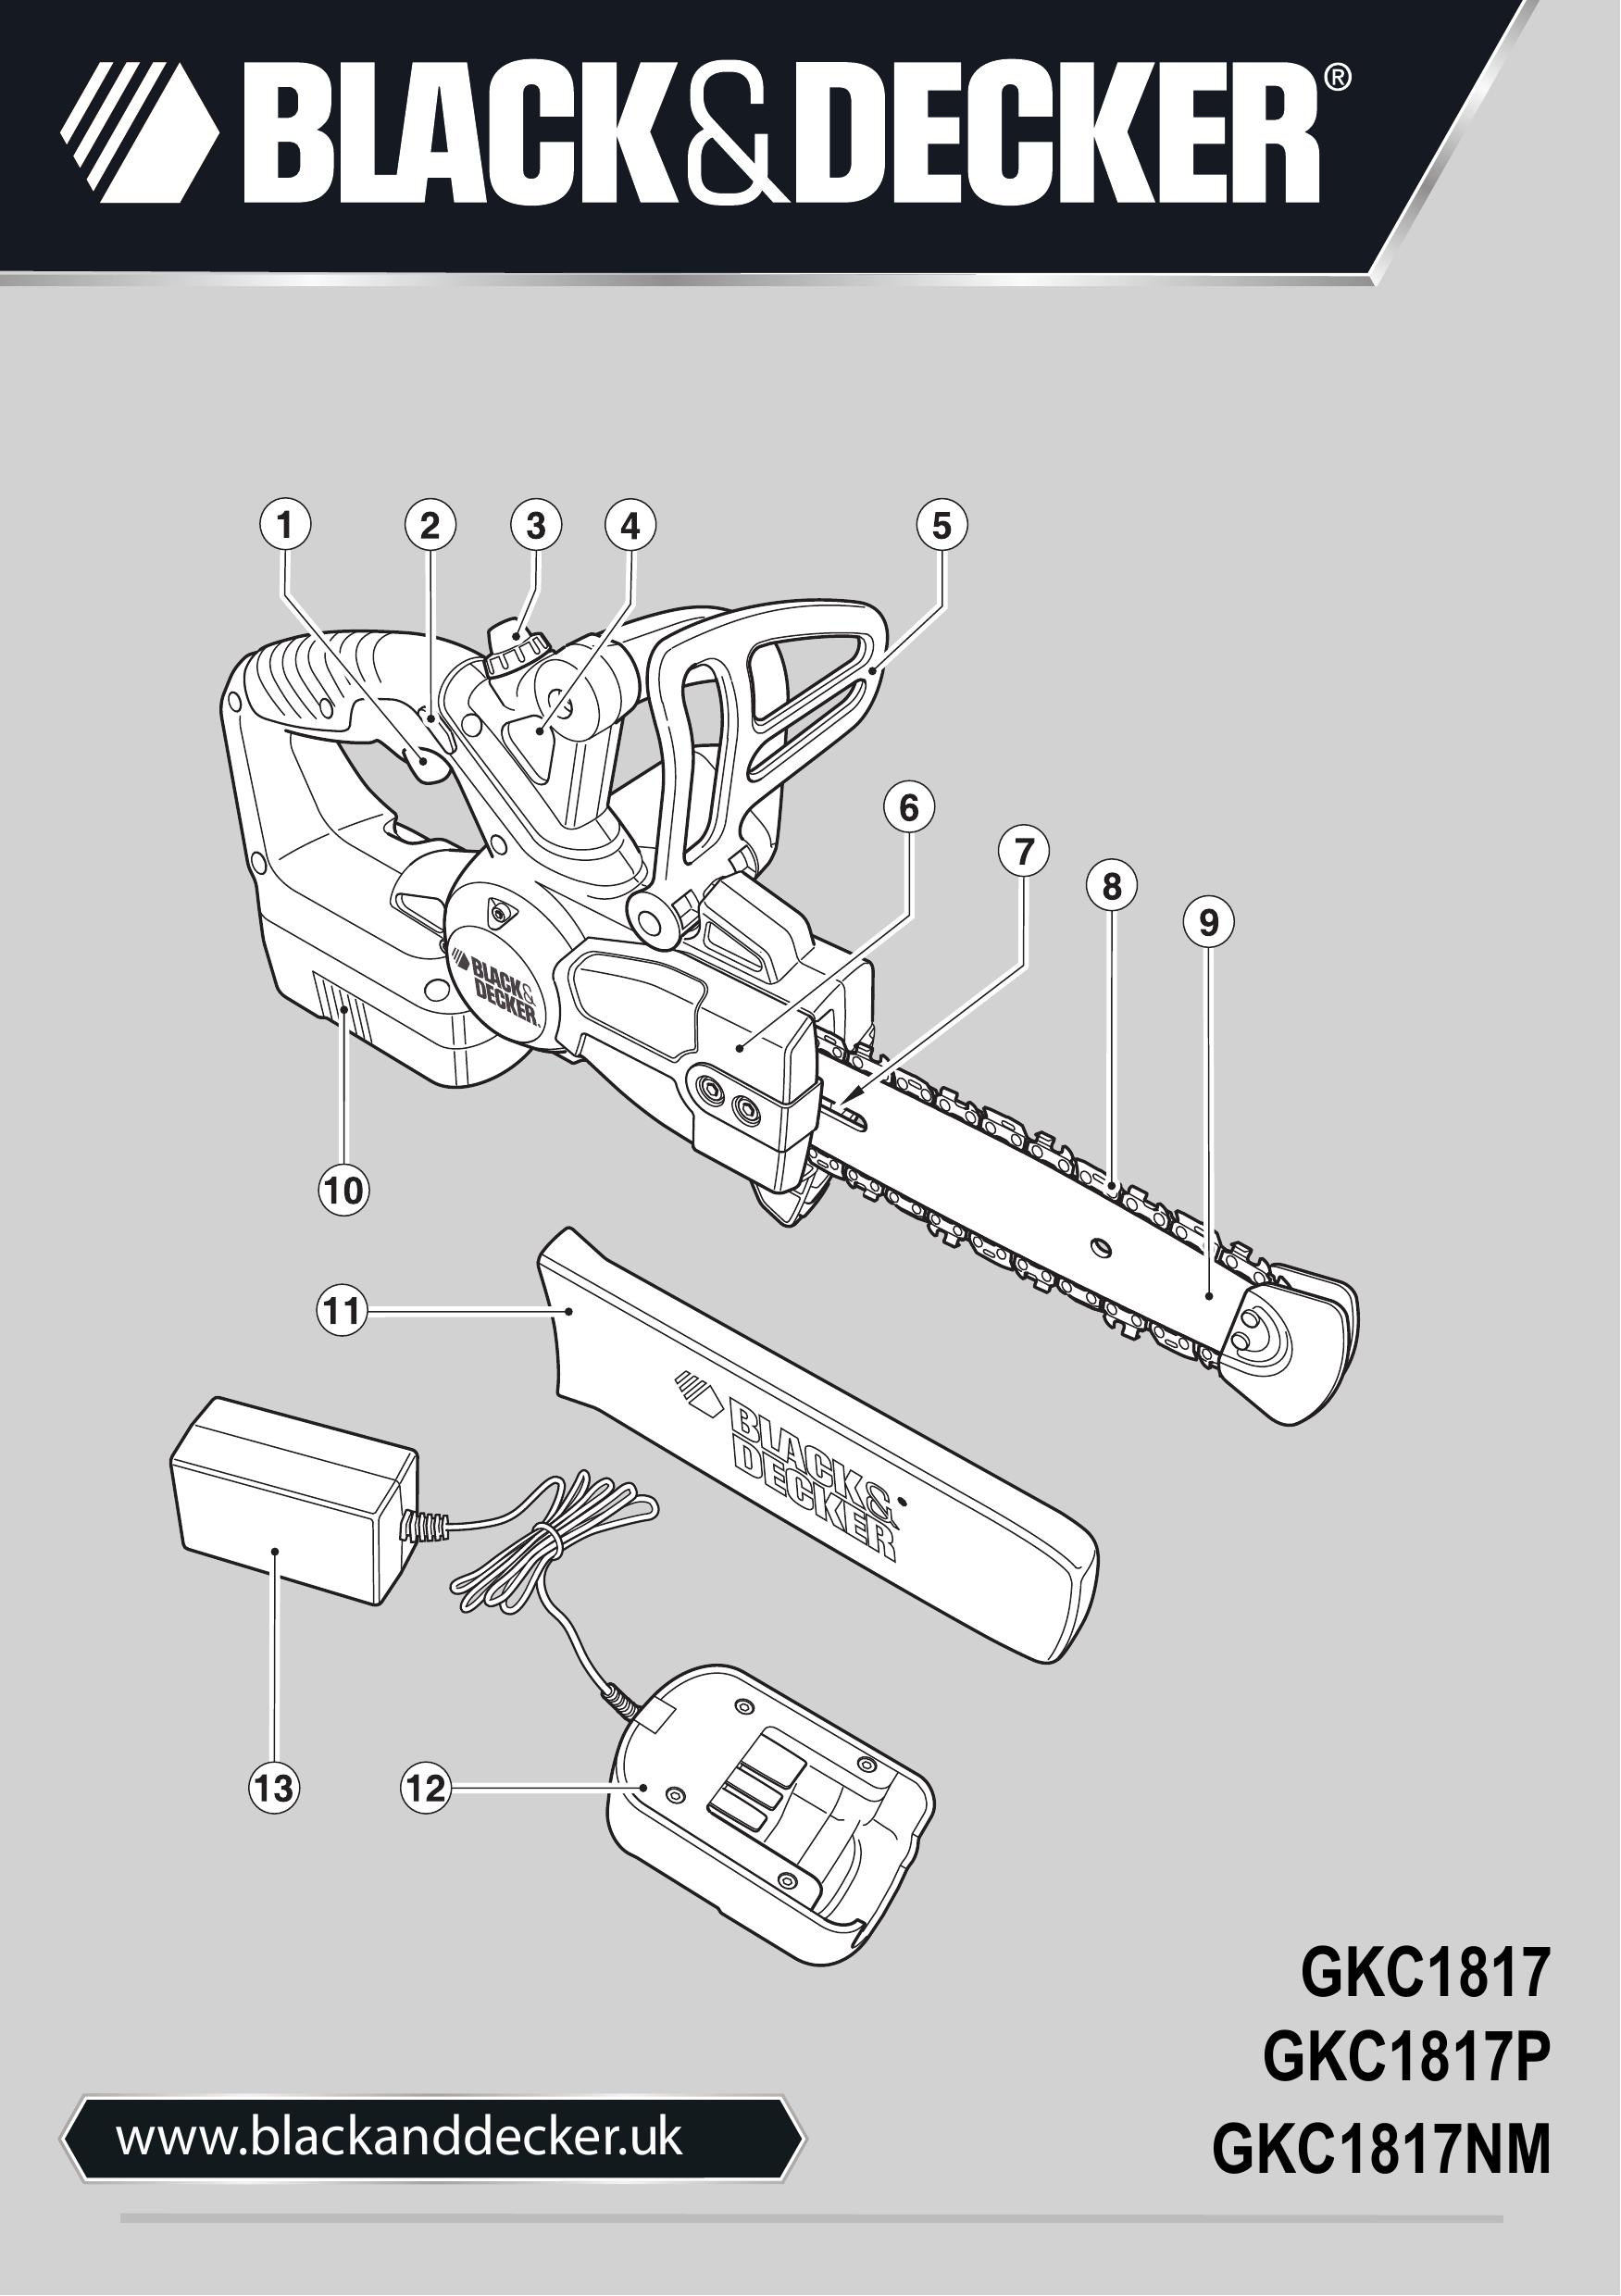 Black & Decker GKC1817P Chainsaw User Manual